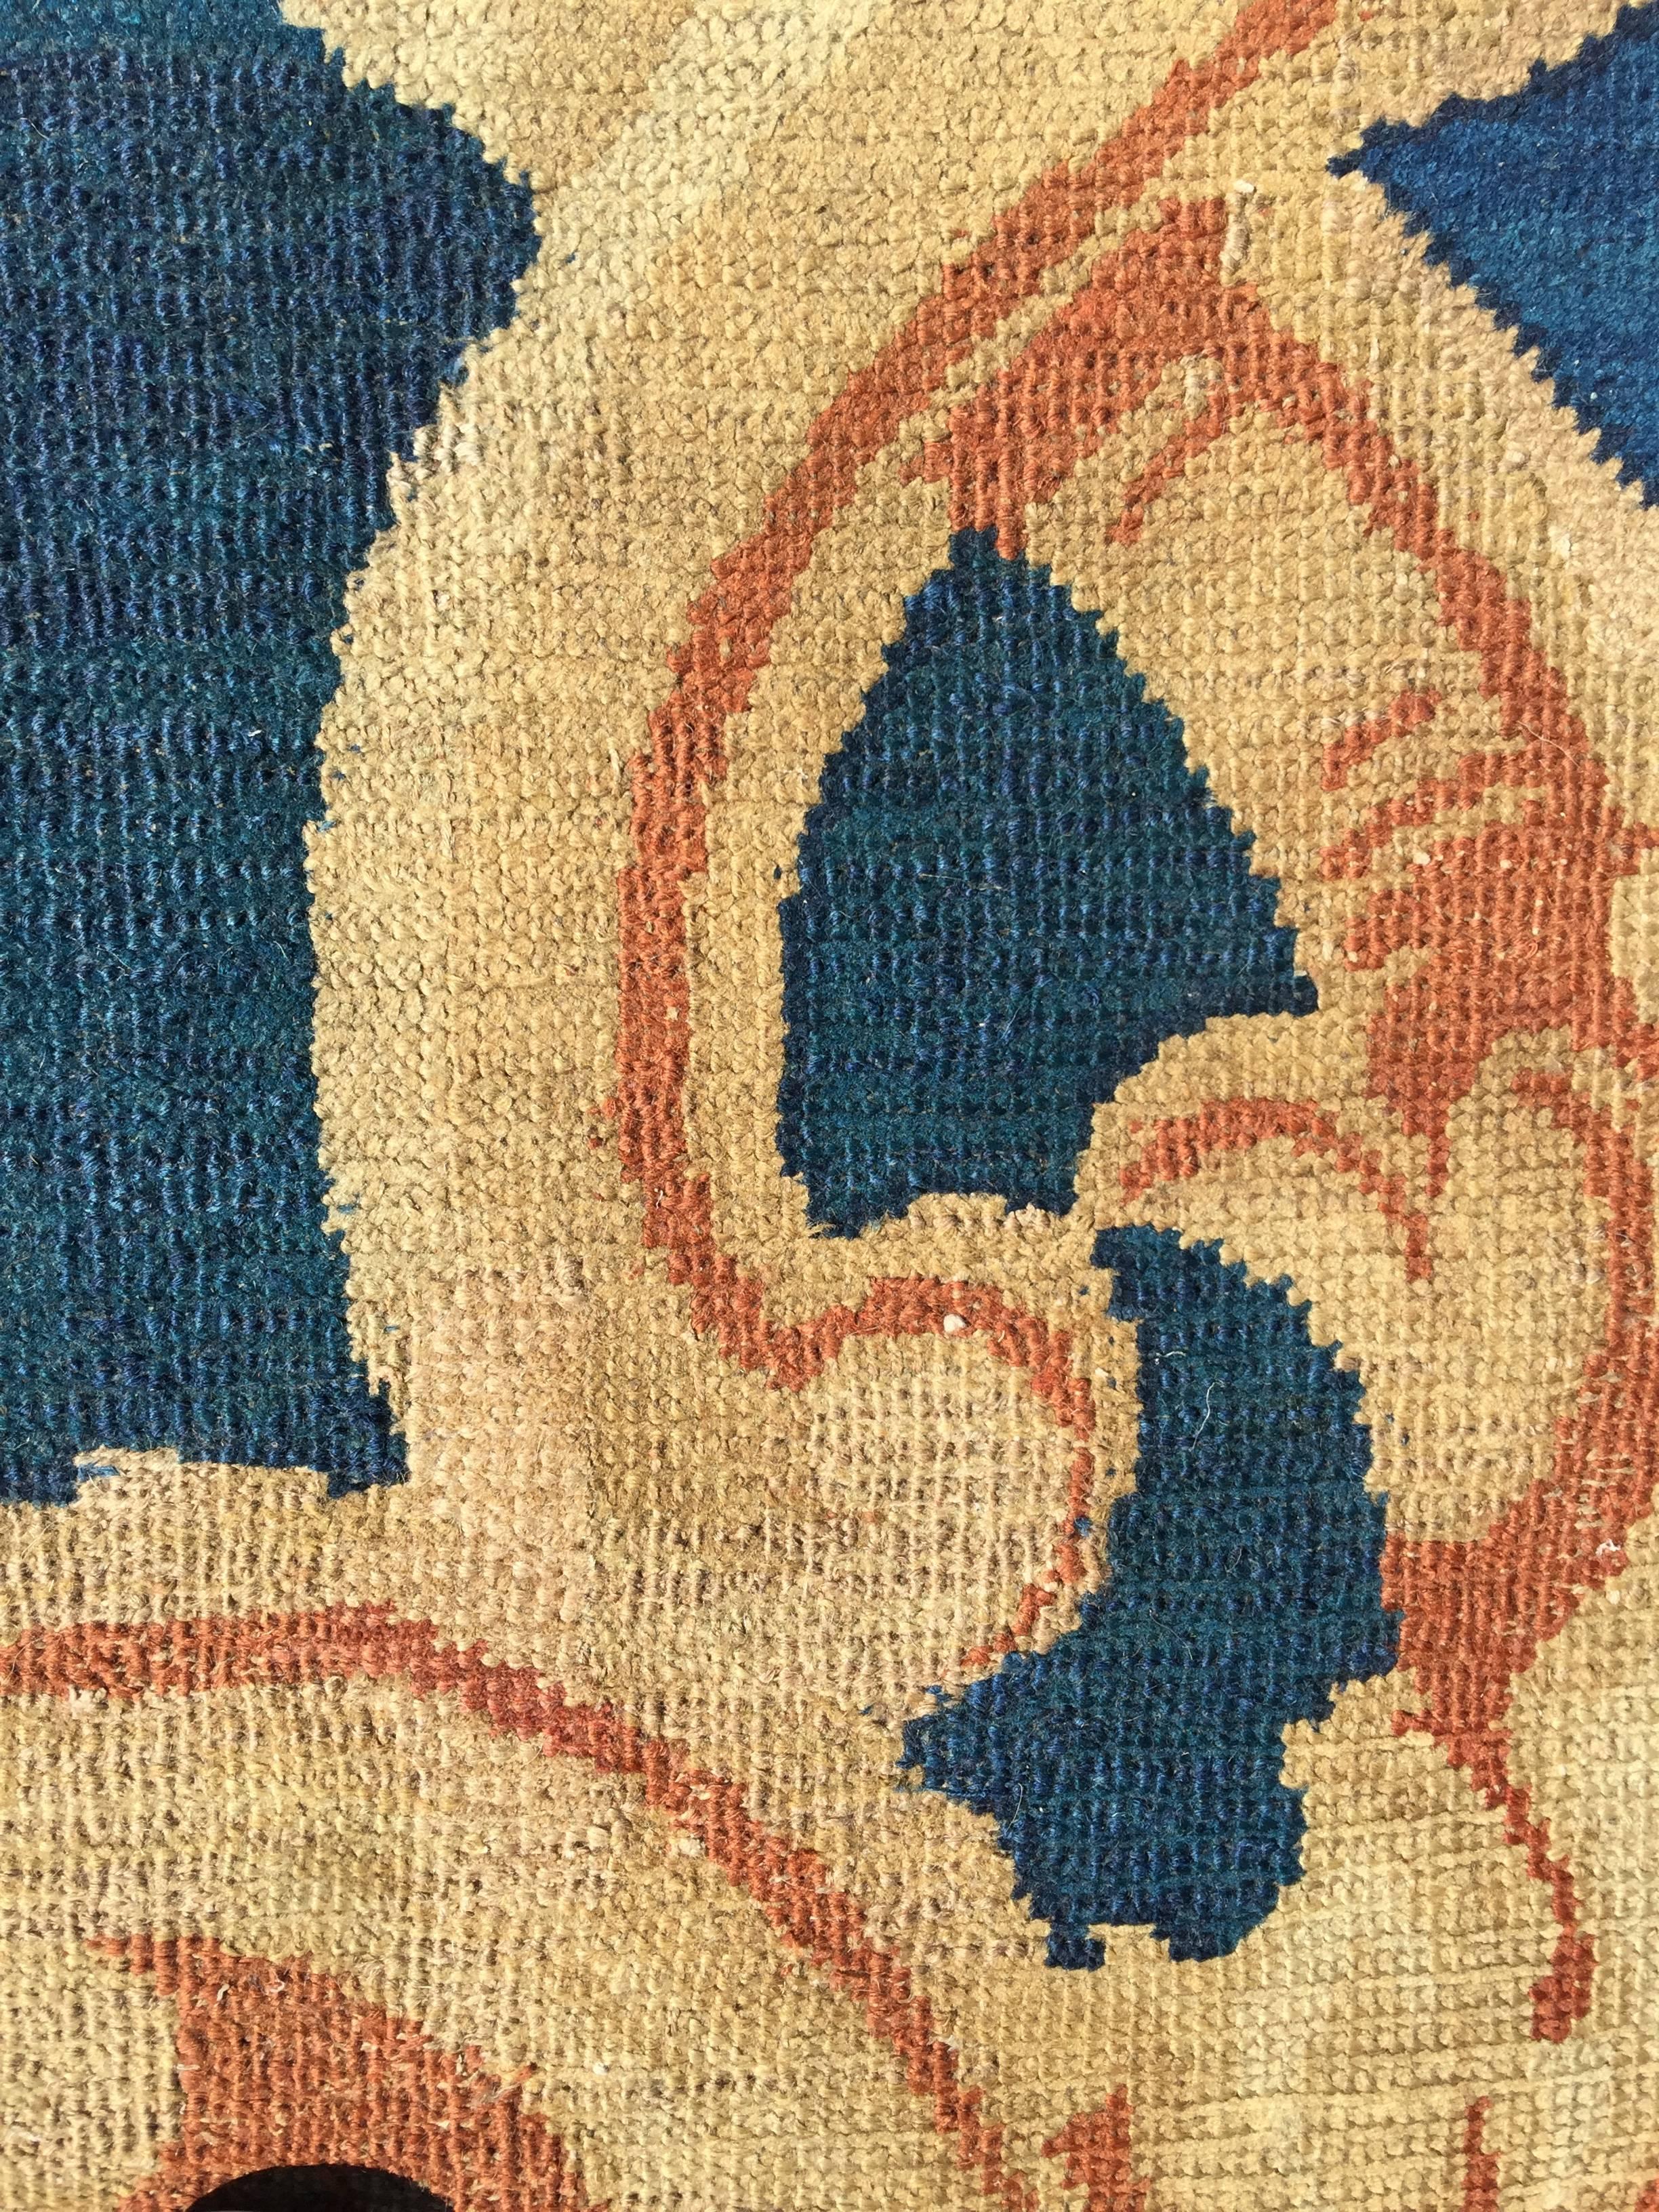 Großer Axminster-Teppich aus dem 19. Jahrhundert, um 1820. Dieser große handgeknüpfte Teppich ist von hervorragender Qualität, mit einem schönen Design und herrlich opulenten Farben. Axminster-Teppiche wurden in dieser handgefertigten Qualität von